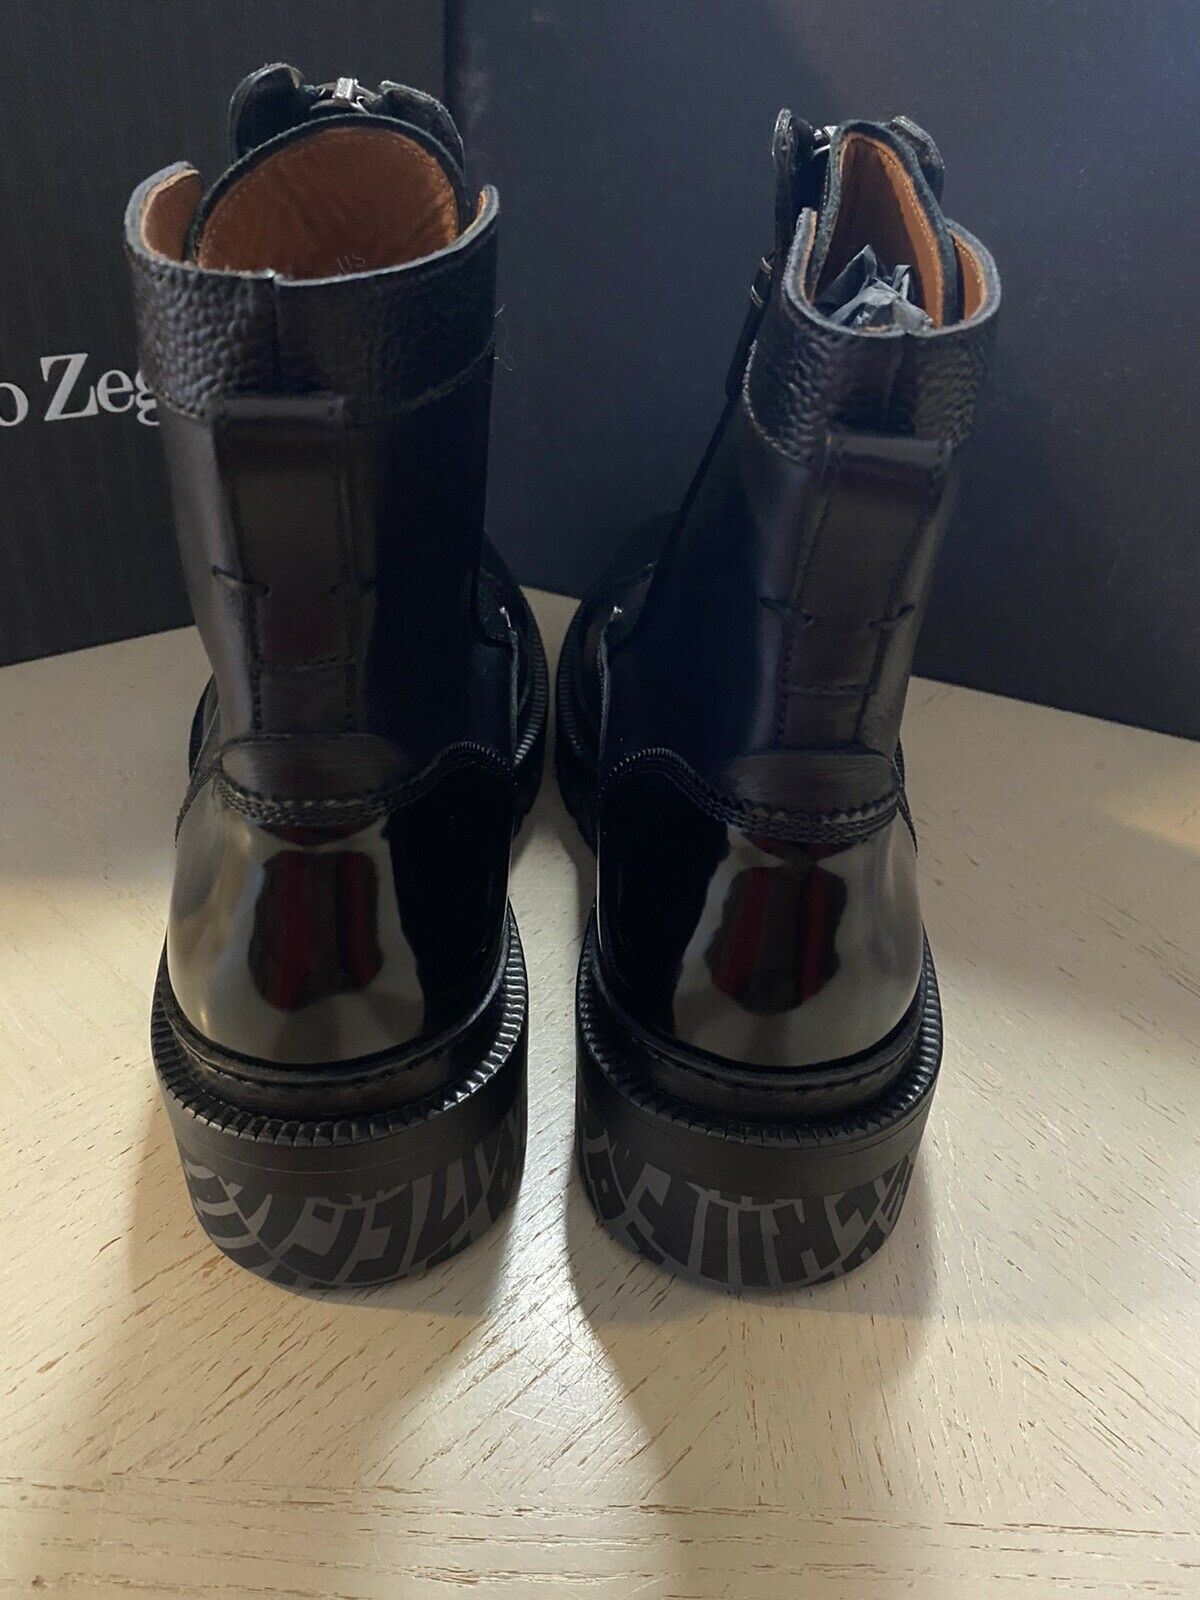 Neu $1595 Ermenegildo Zegna Couture Leder Leichte Stiefel Schuhe Schwarz 10 US Italien